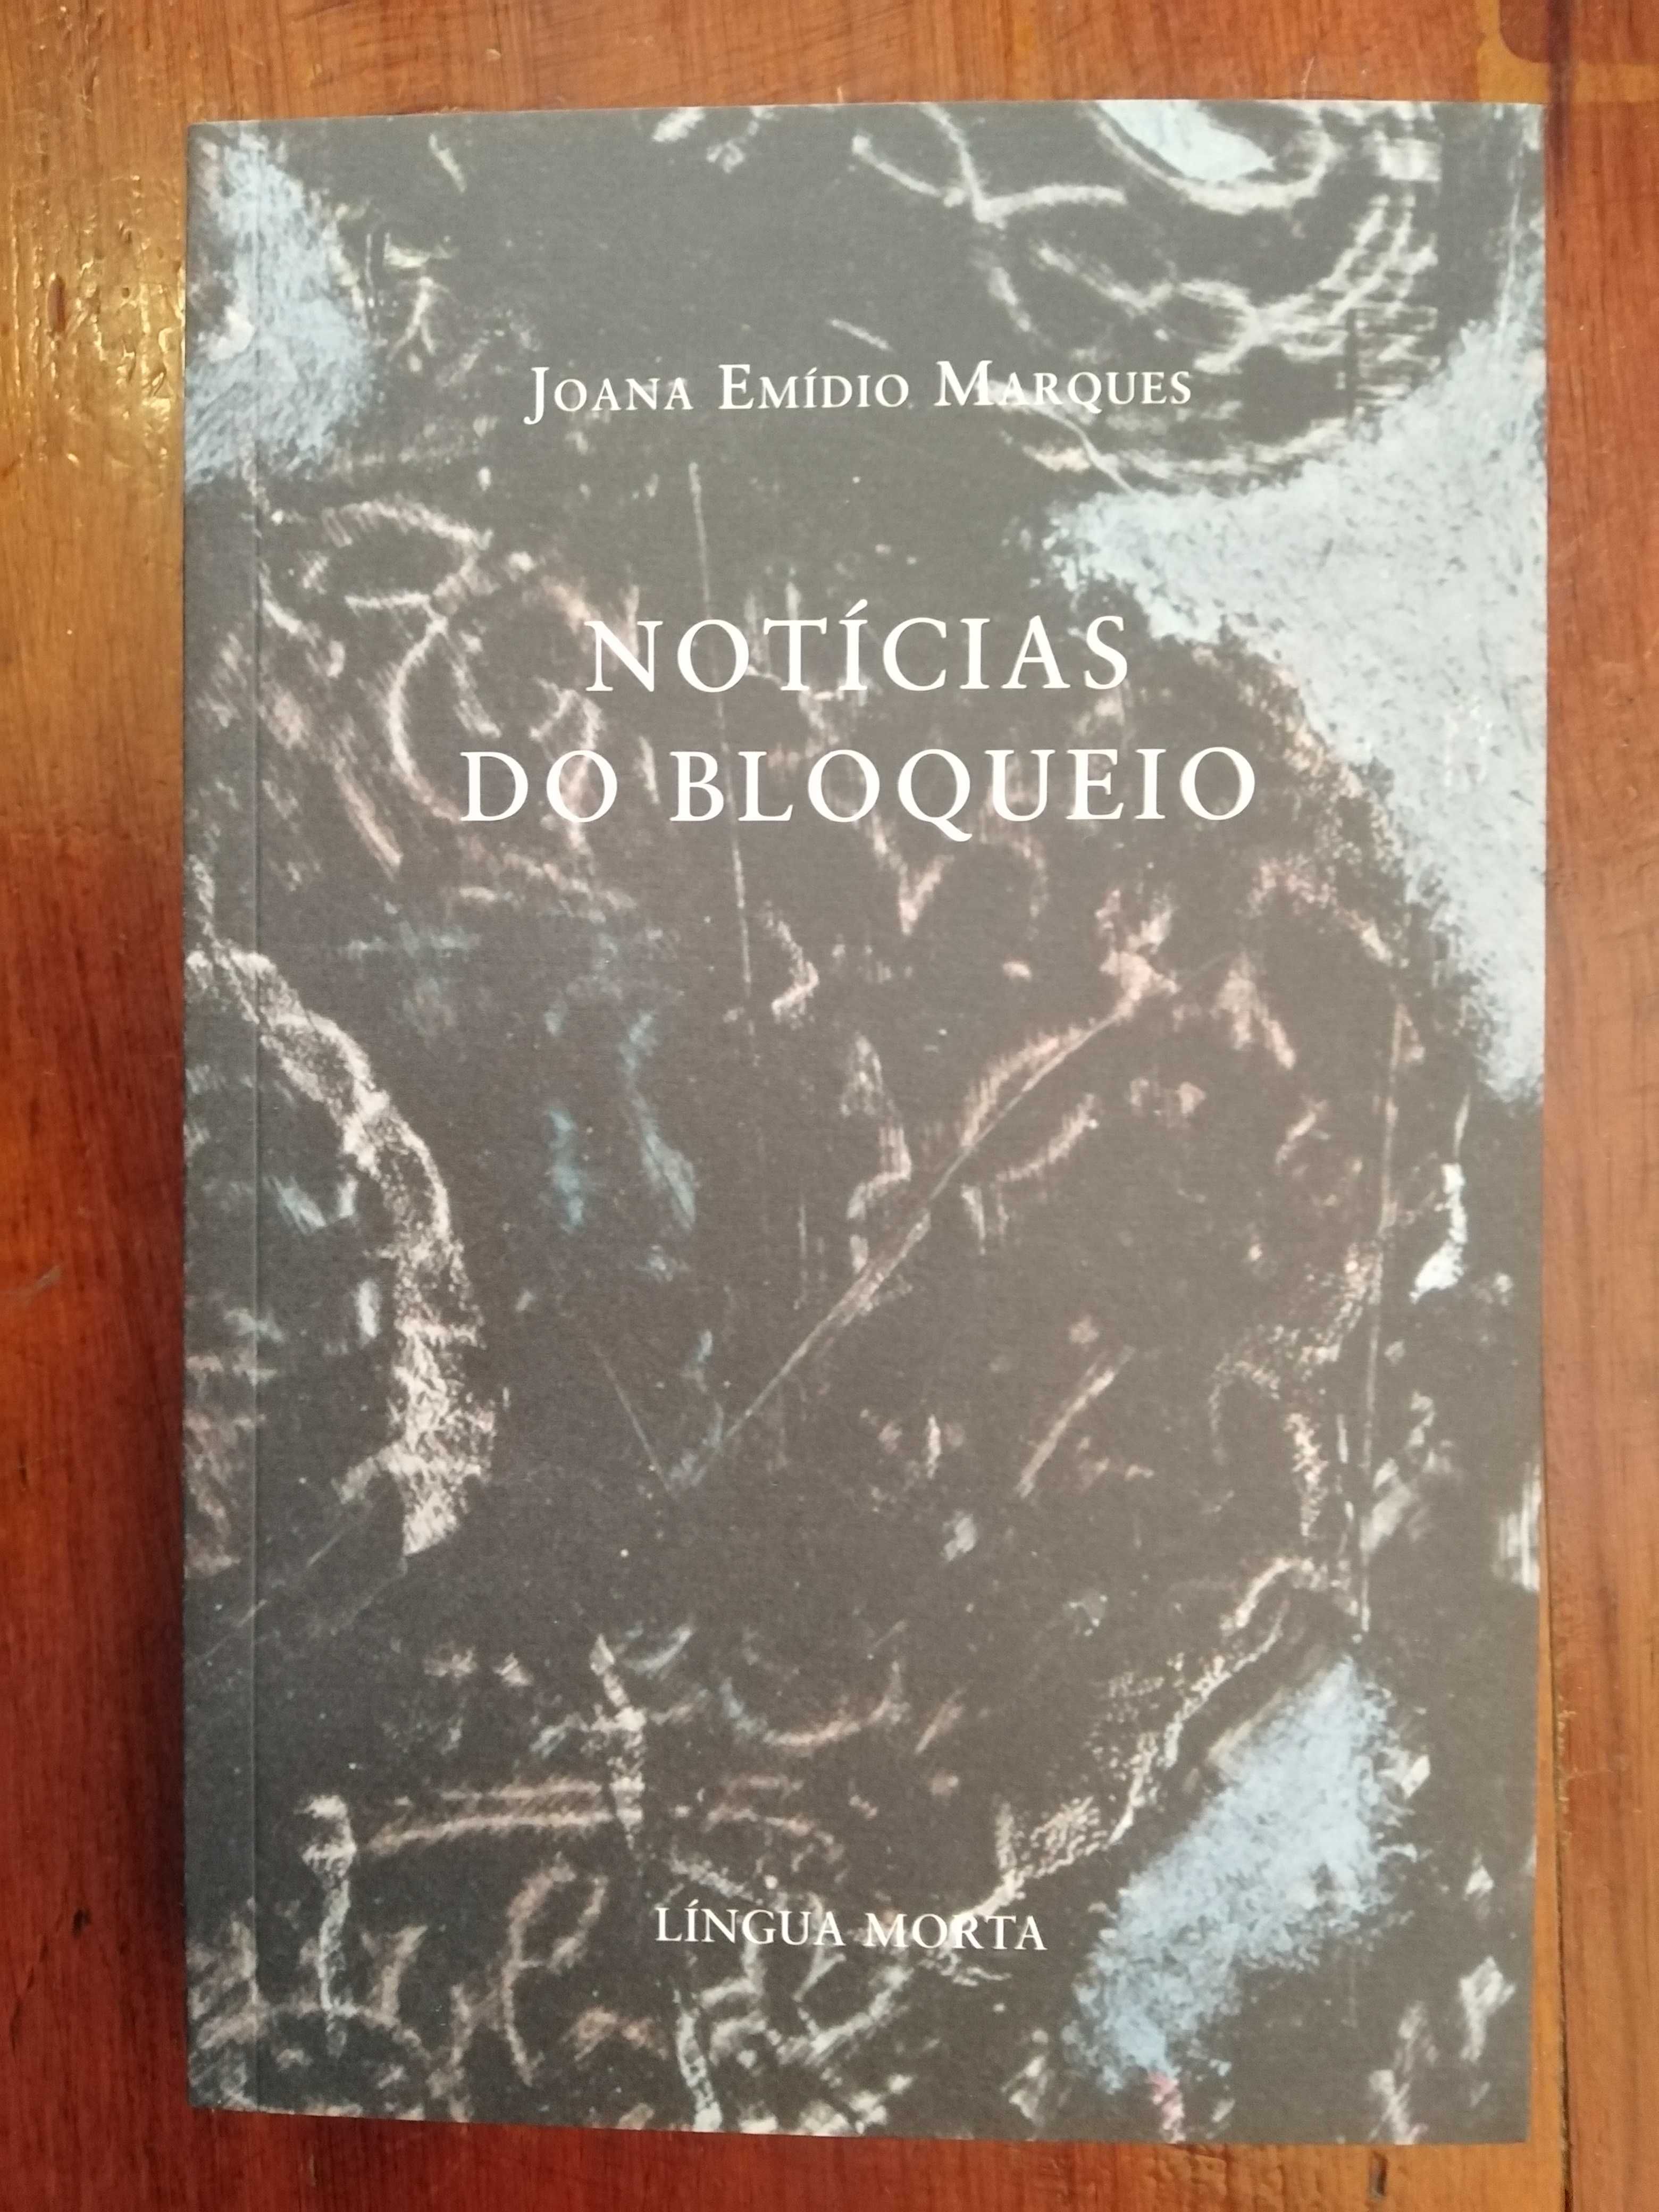 Joana Emídio Marques - Notícias do bloqueio